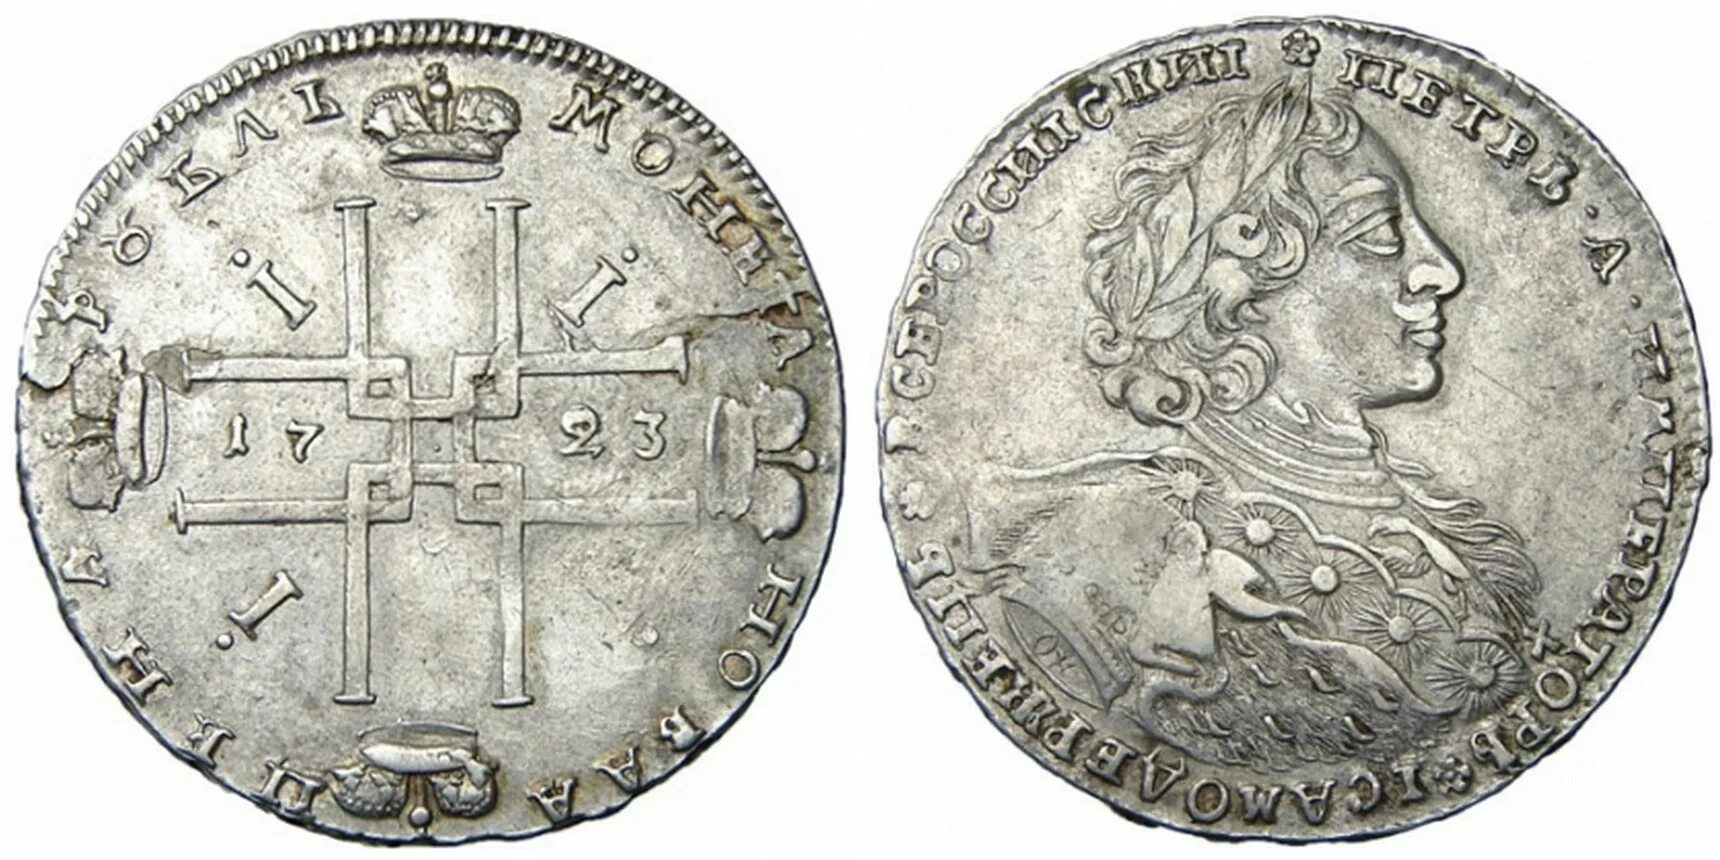 Монета Петра 1 1723г. Монета рубль Петра 1 1723. Монеты Российской империи Петра 1.